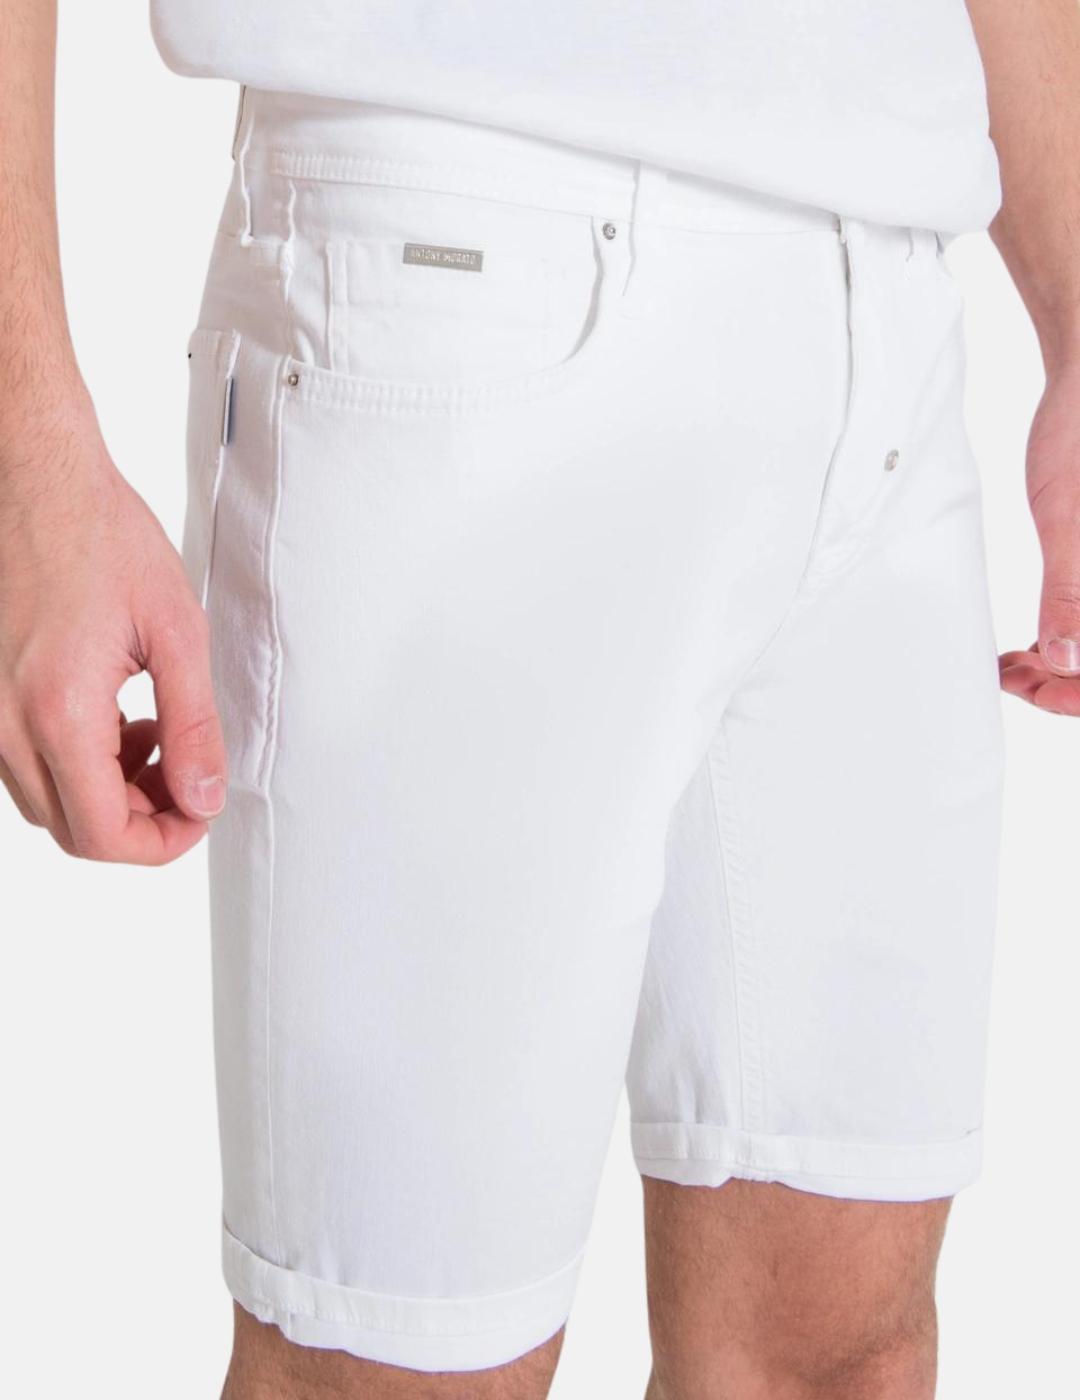 Pantalon corto Antony Morato blanco Ozzy hombre